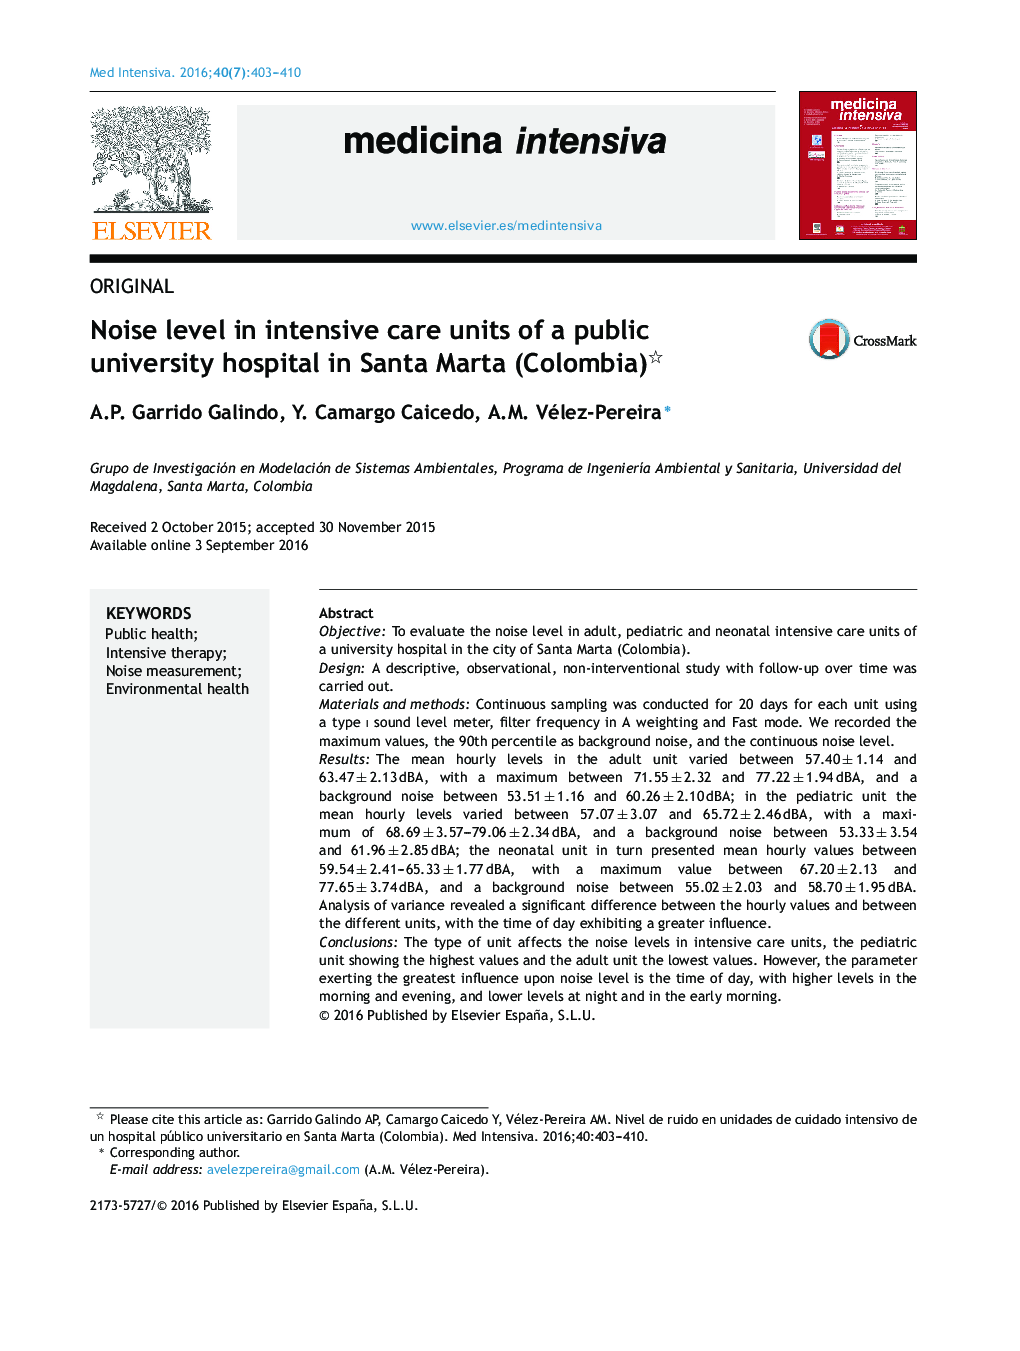 سطح سر و صدا در بخش مراقبت های ویژه یک بیمارستان دولتی دانشگاه سانتا مارتا (کلمبیا) 